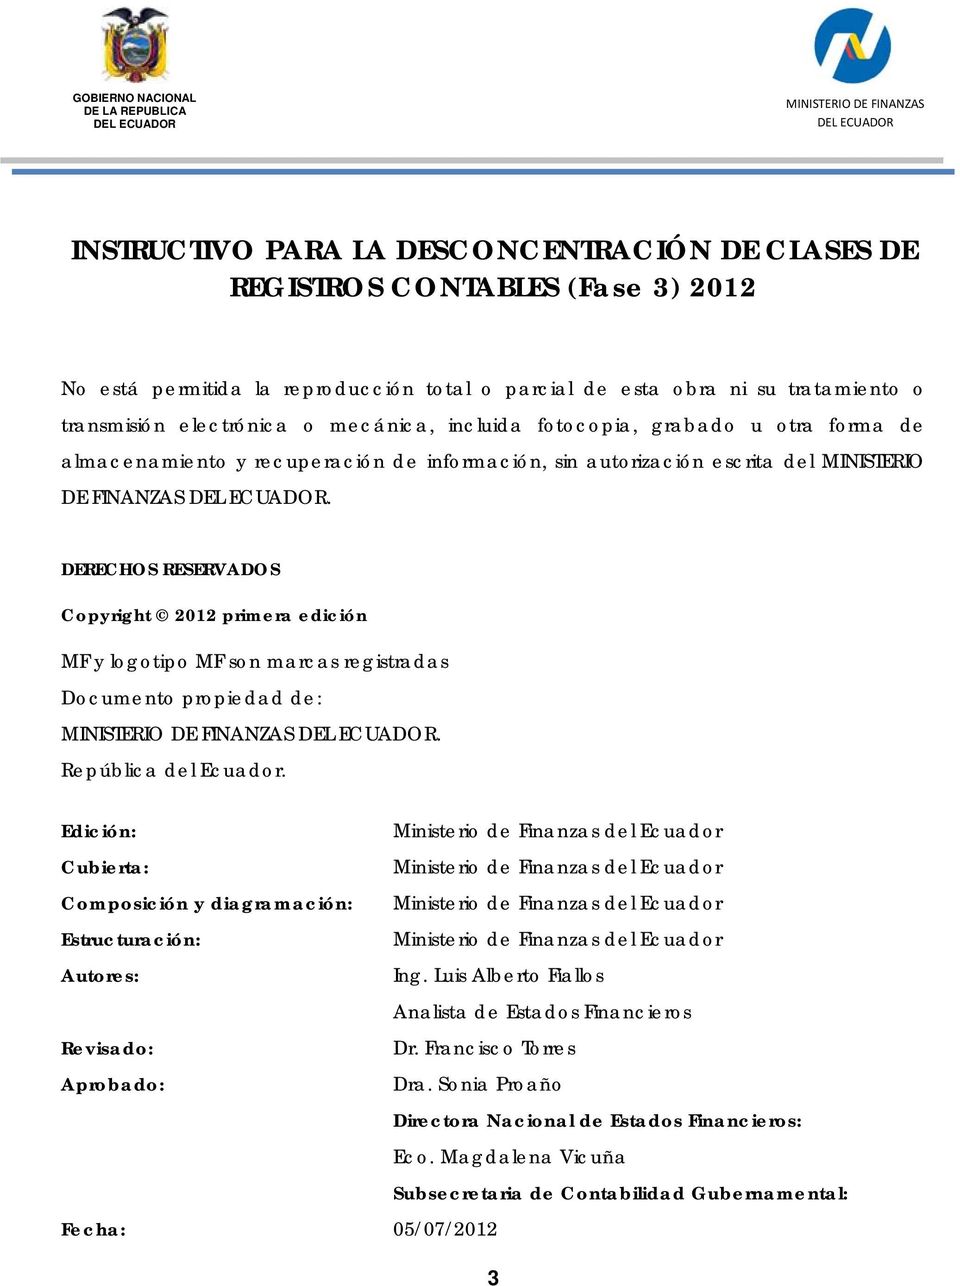 DERECHOS RESERVADOS Copyright 2012 primera edición MF y logotipo MF son marcas registradas Documento propiedad de:. República del Ecuador.